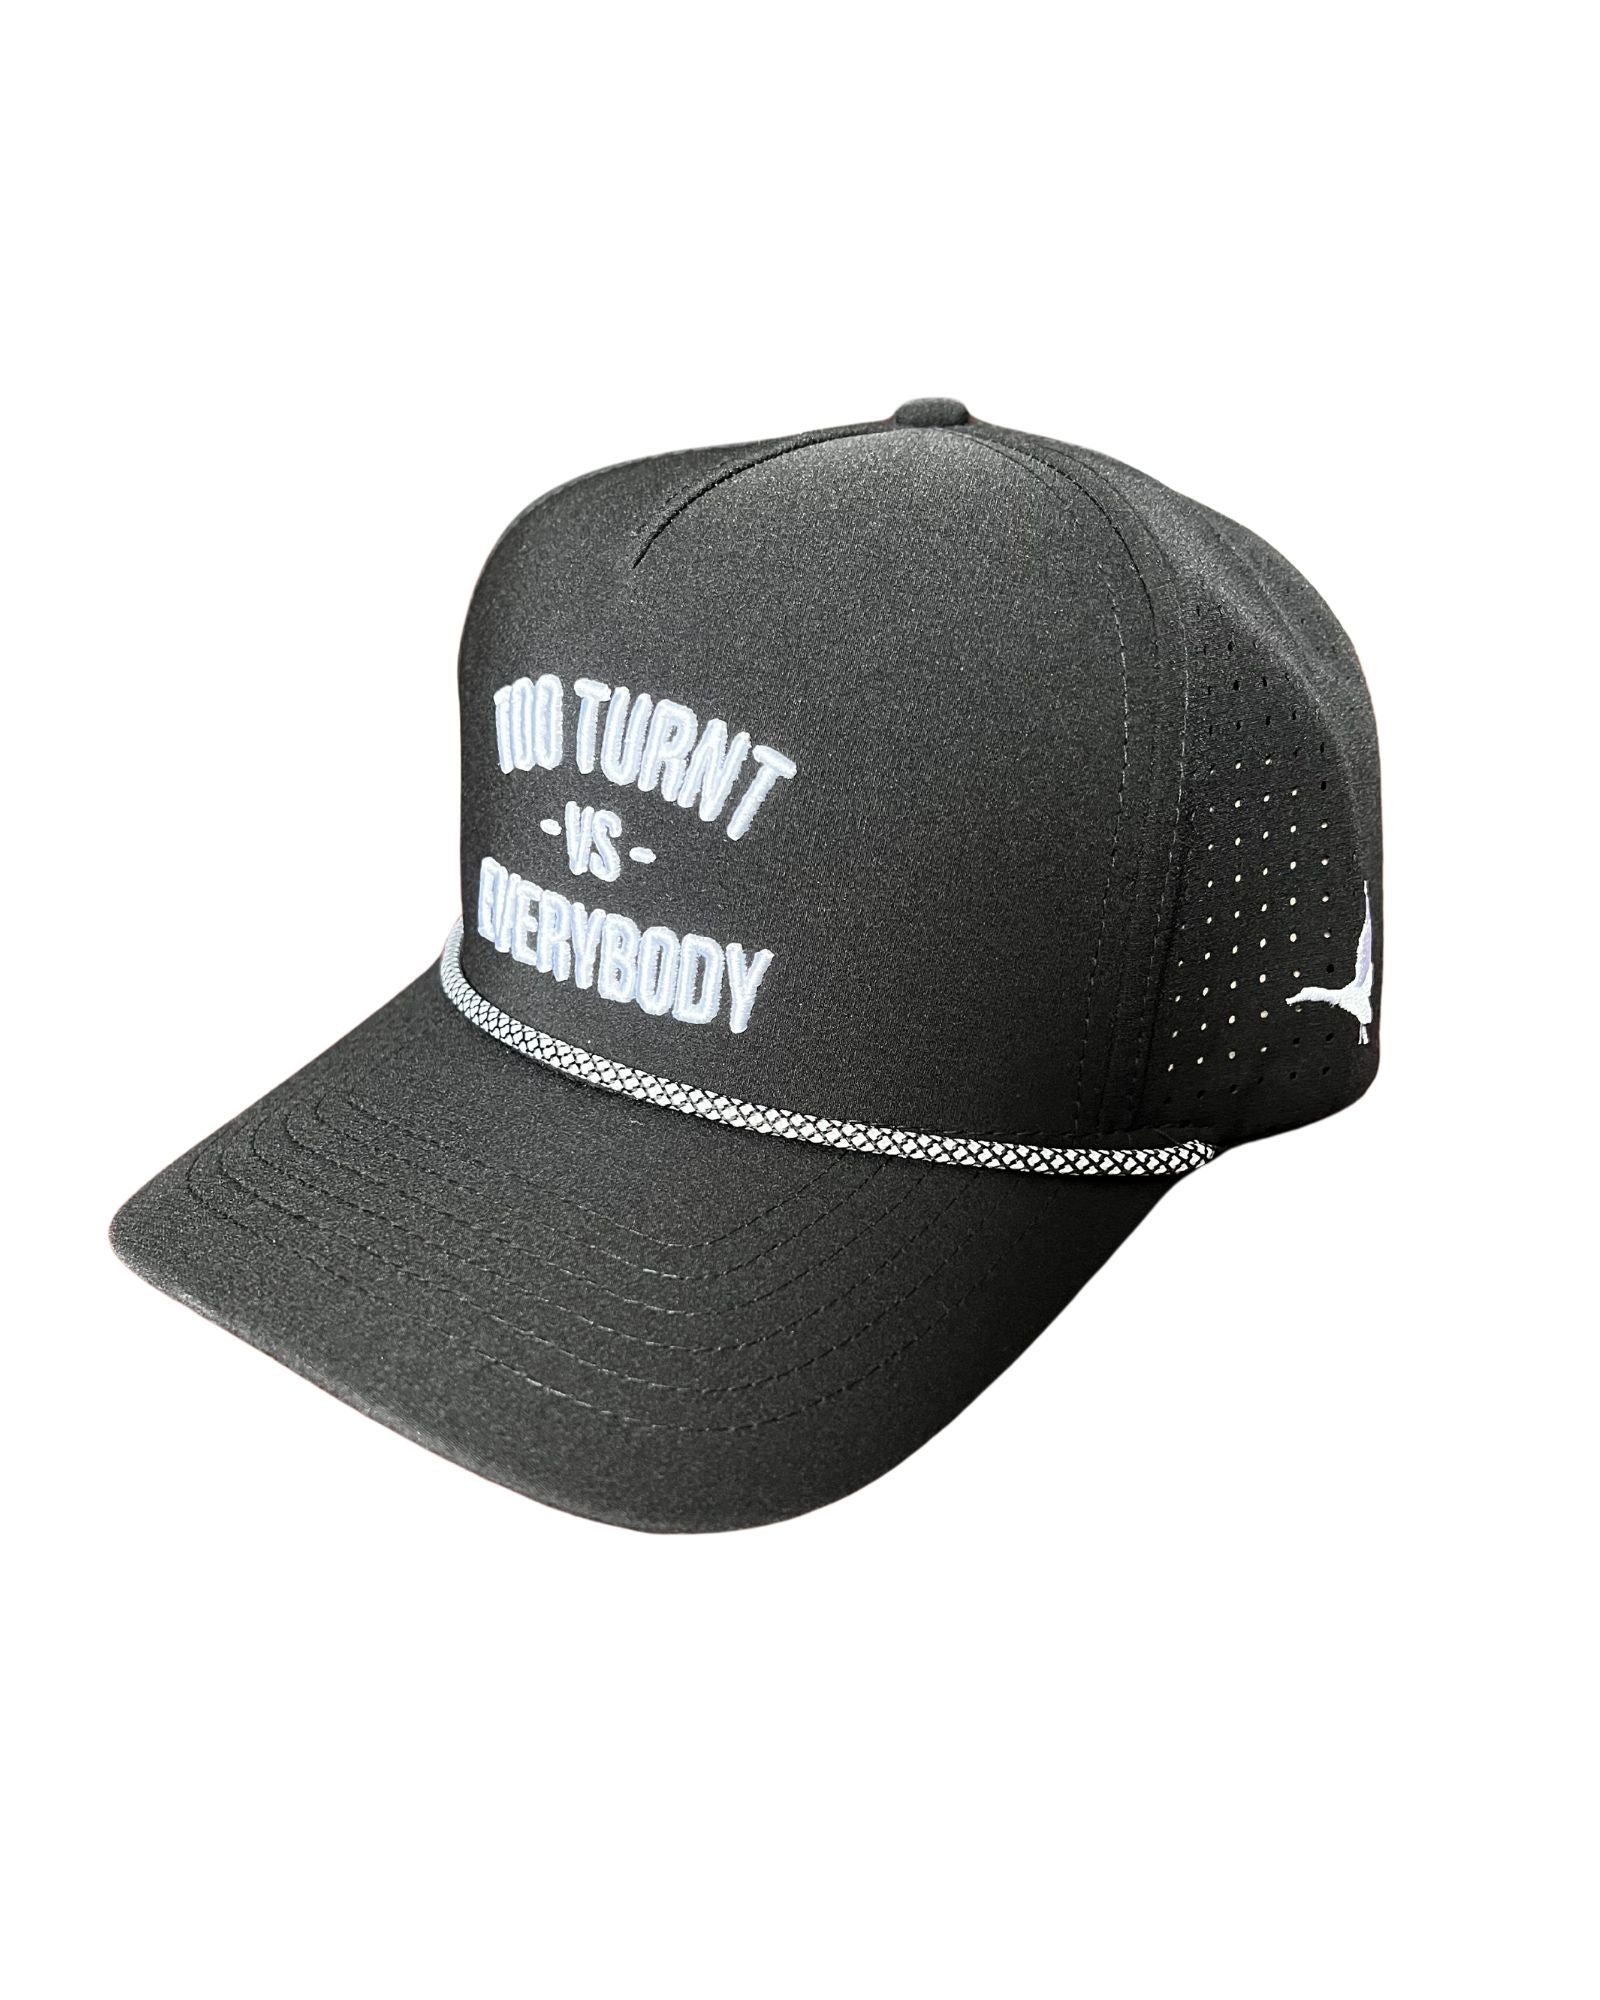 TT vs. Everybody Hat